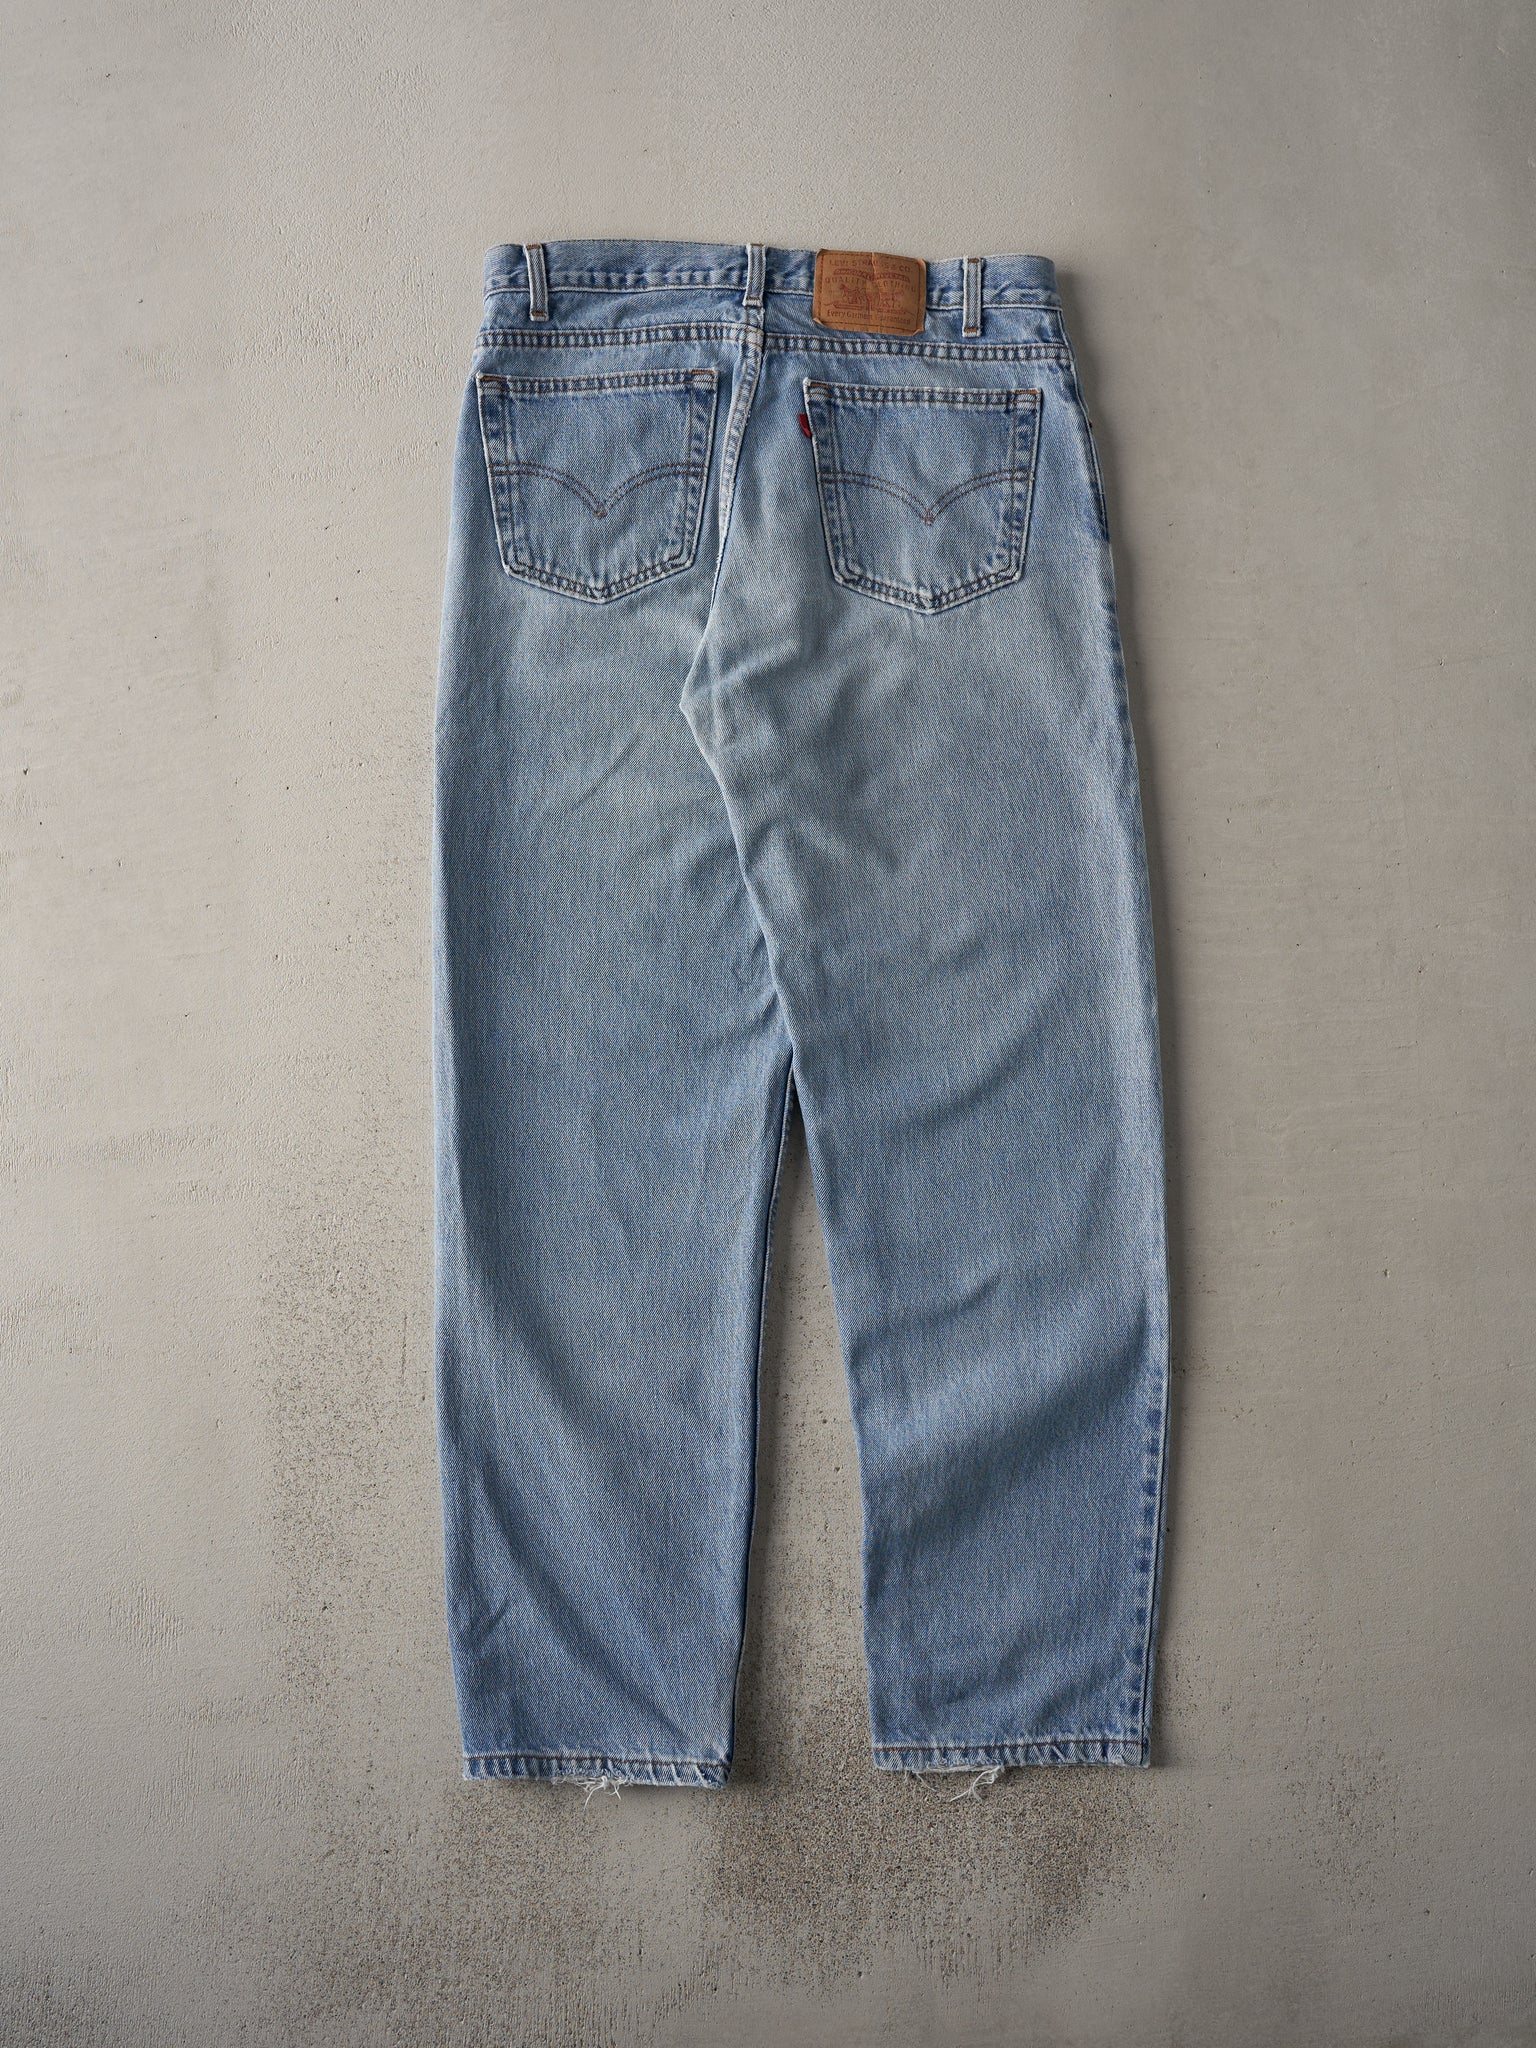 Vintage 90s Light Wash Levi's 550 Jeans (33x30.5)